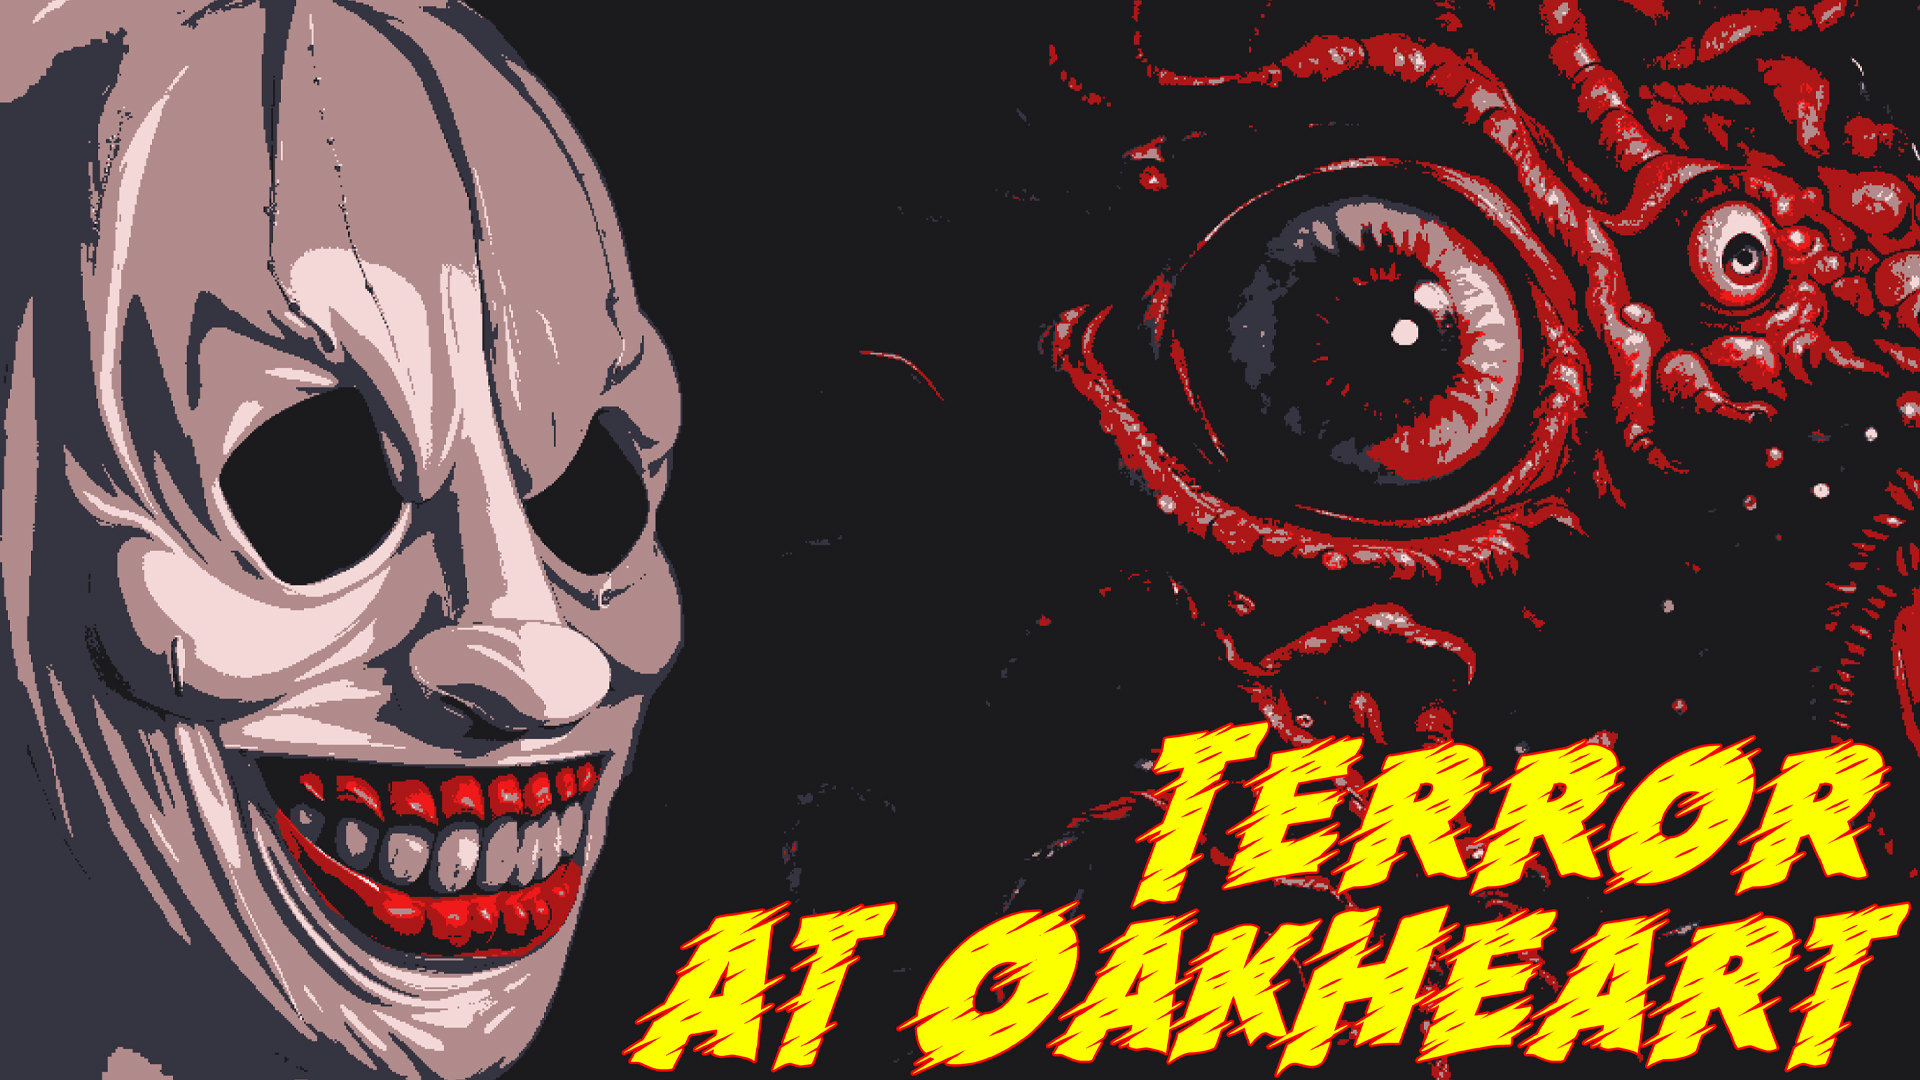 Terror at Oakheart